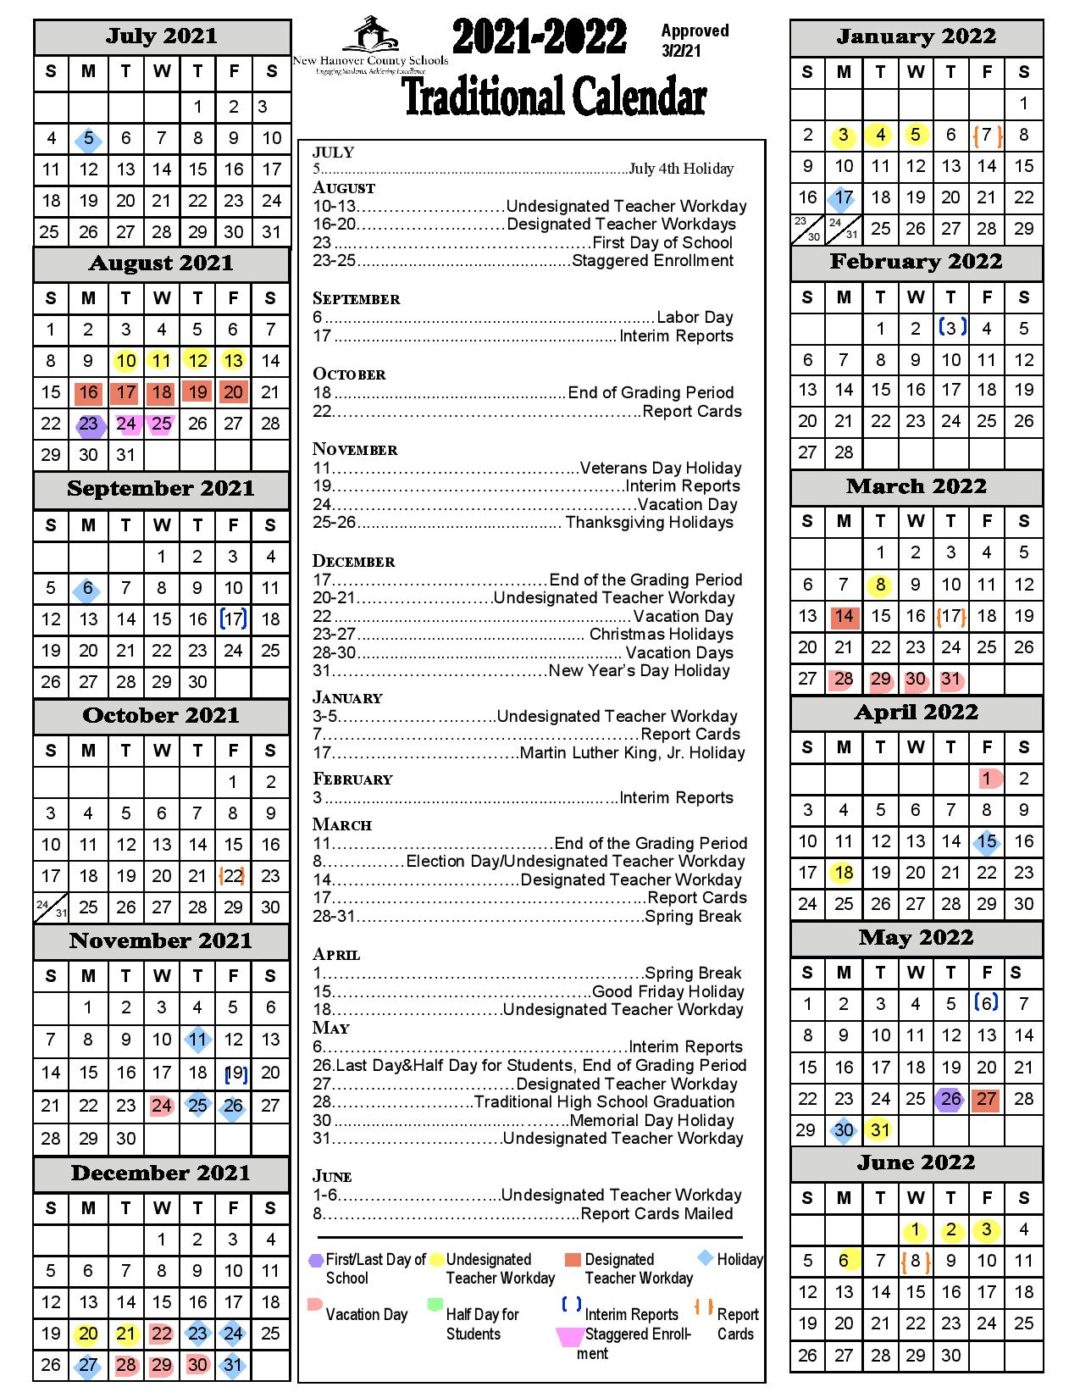 nhcs-calendar-22-23